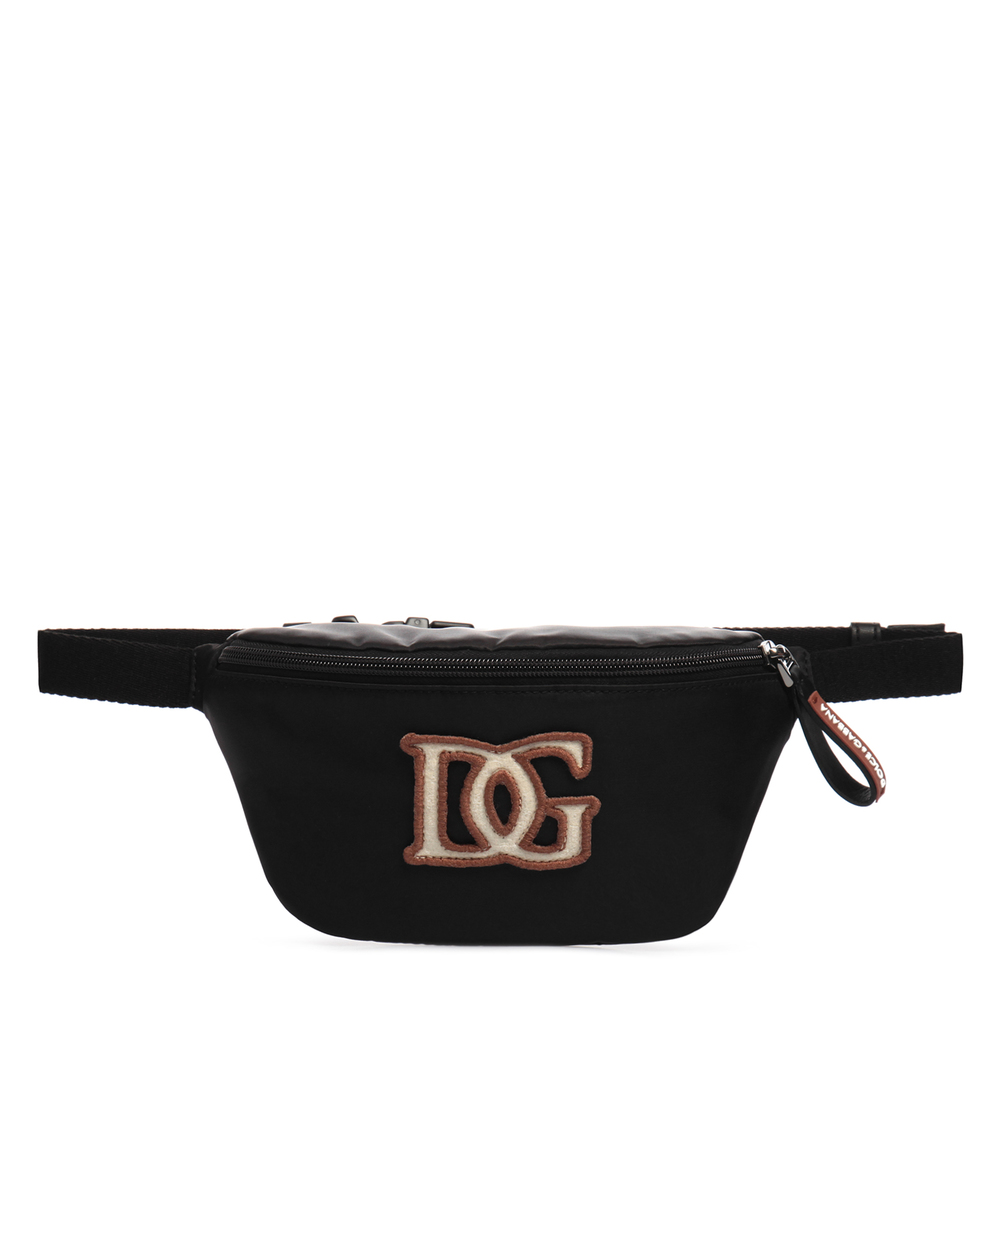 Поясная сумка Dolce&Gabbana EM0072-AV002, черный цвет • Купить в интернет-магазине Kameron